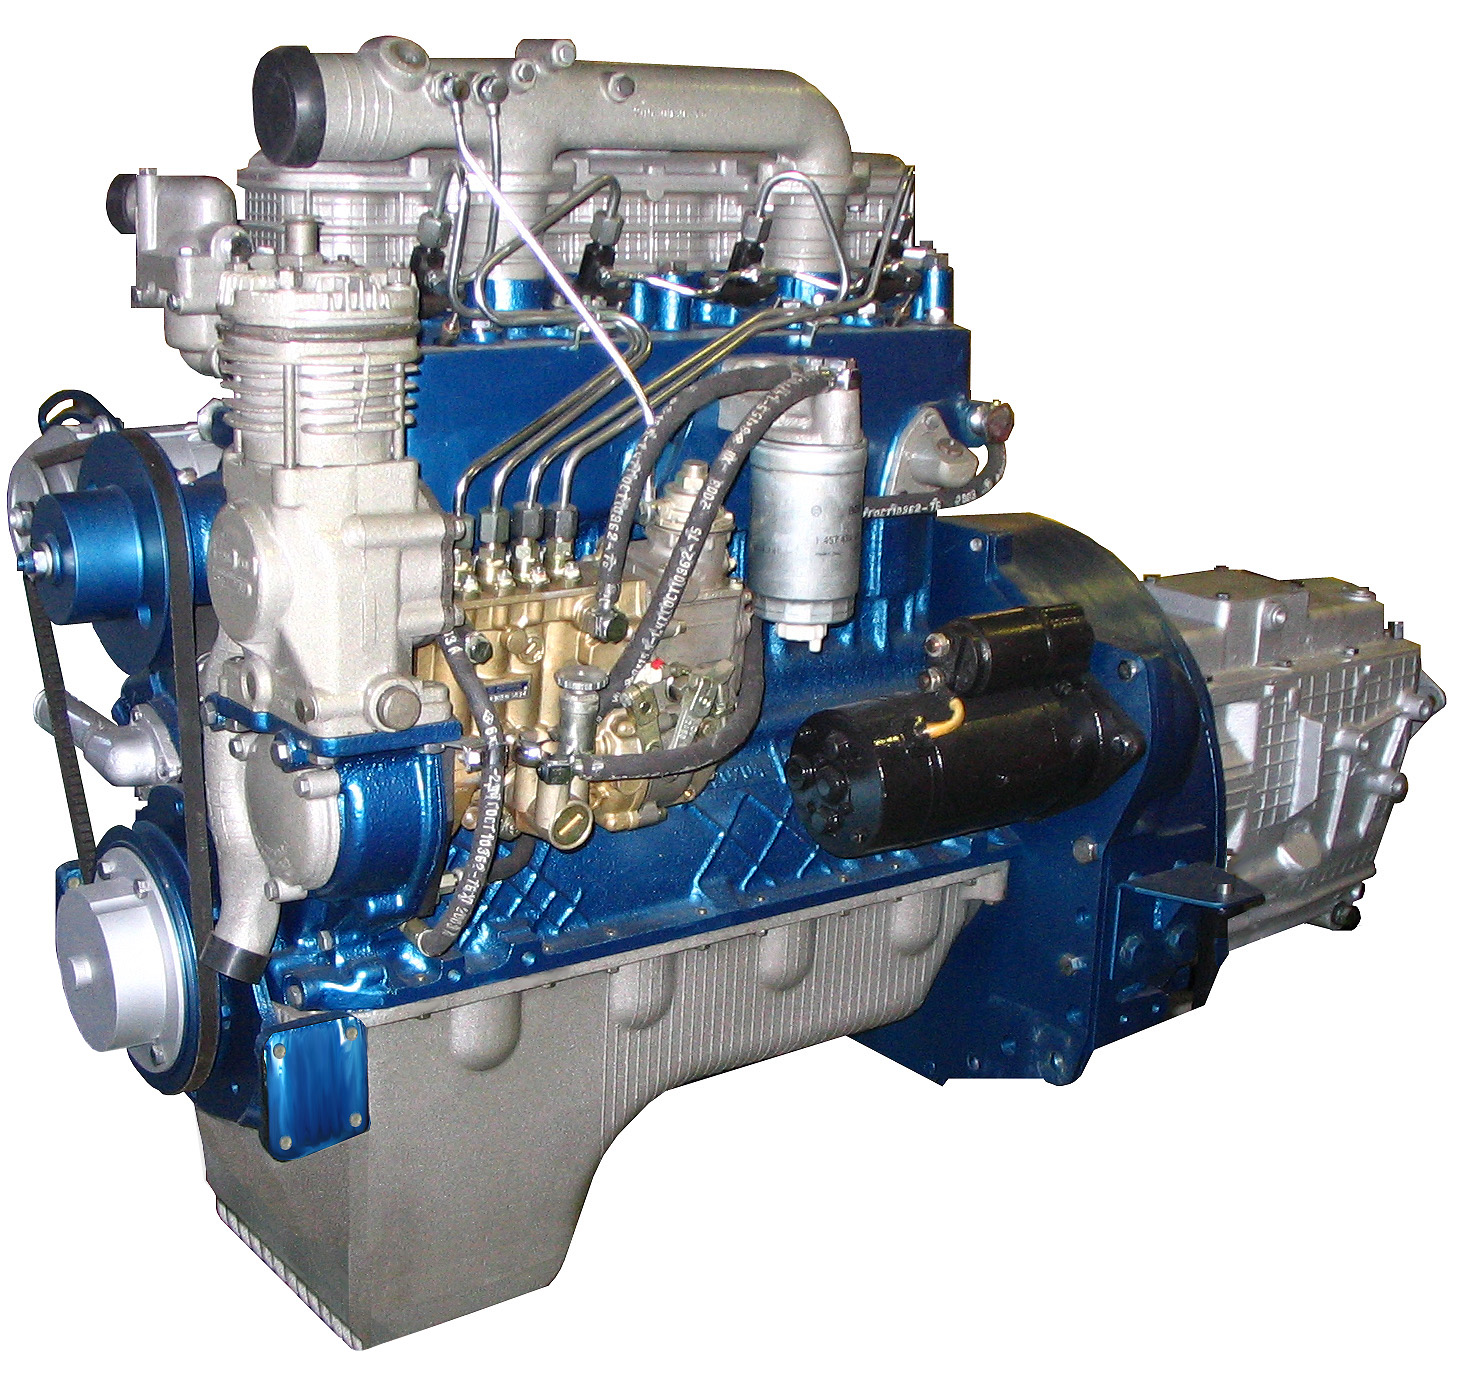 Купить двигатель 245 б у. Двигатель ММЗ Д-245. Двигатель ММЗ 245 евро 2. Двигатель ММЗ Д-245.7. Двигатель ММЗ Д245.7е2.